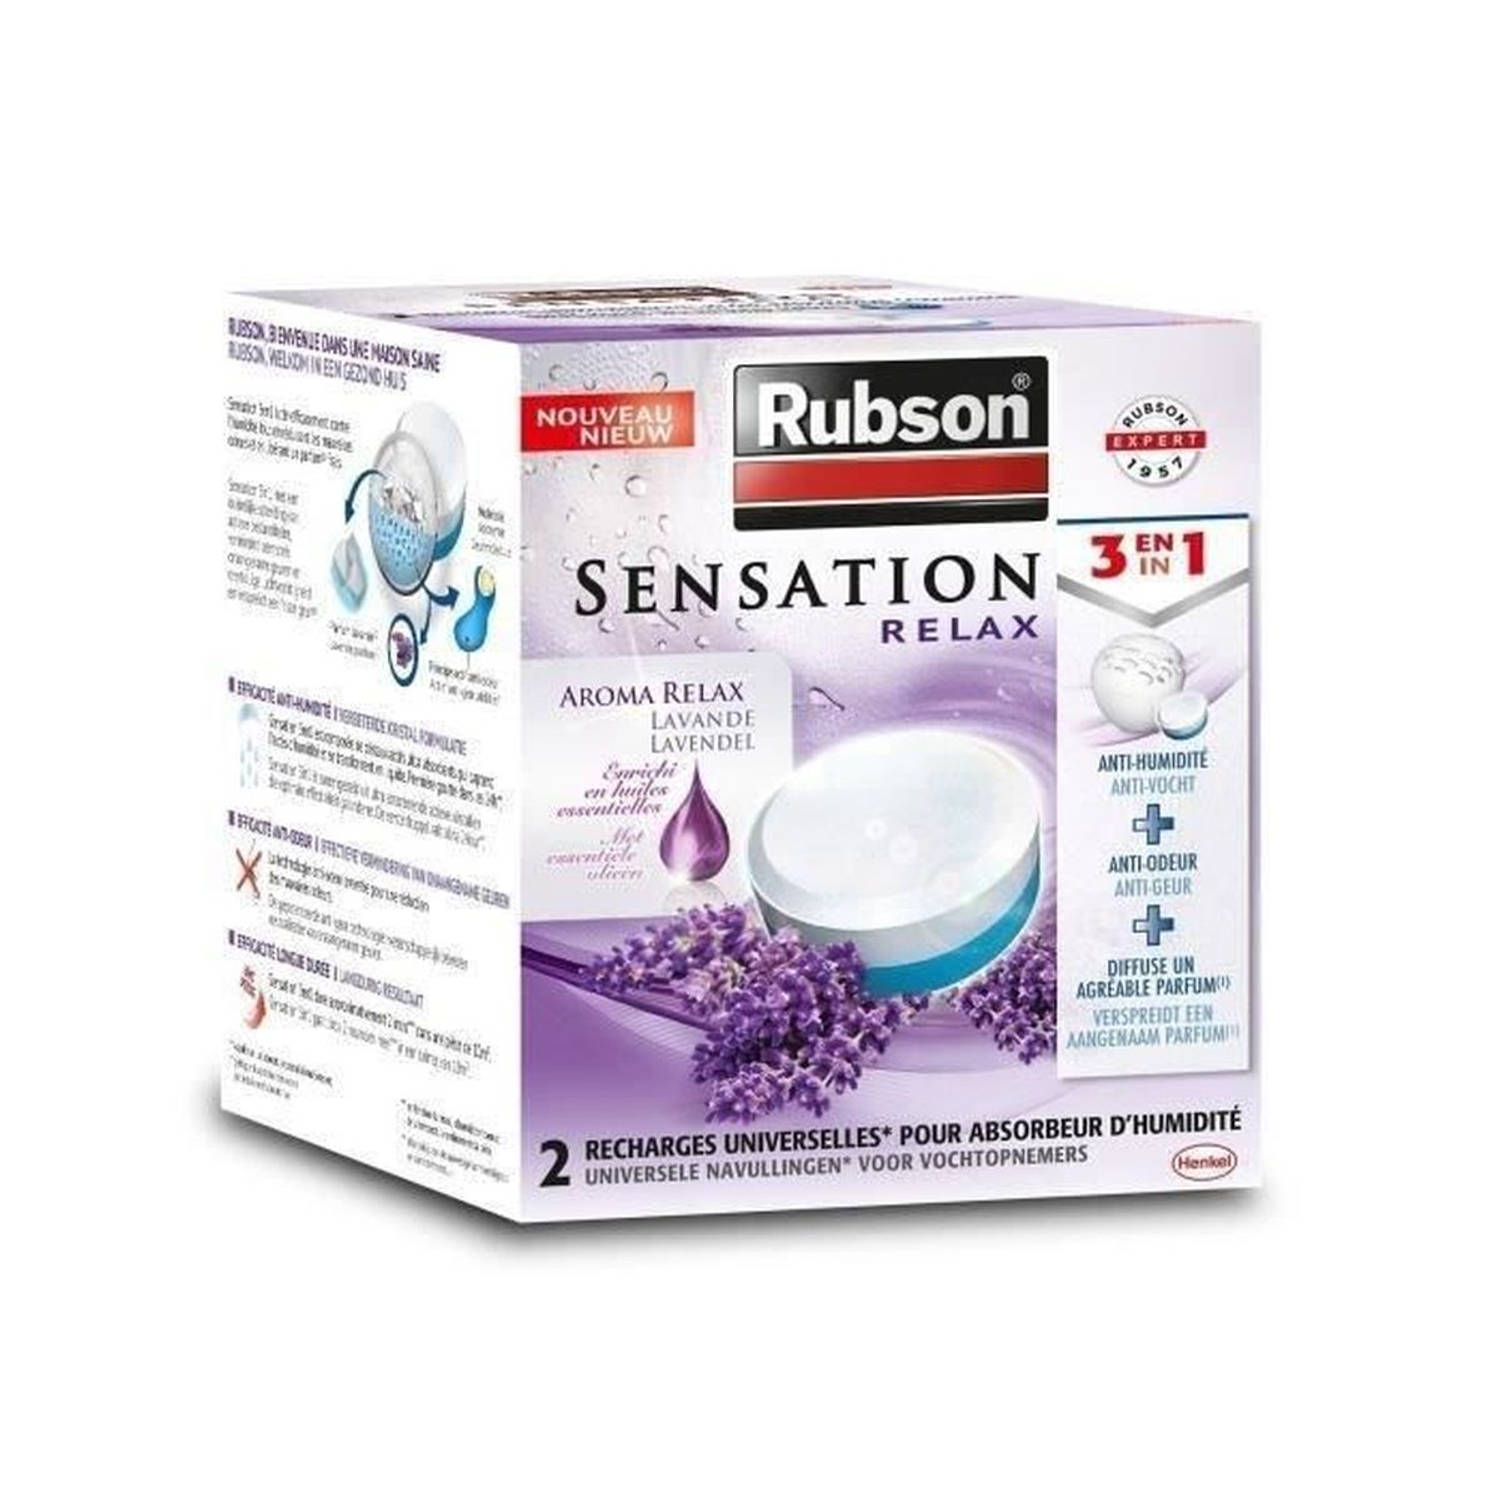 RUBSON Sensation 2 power tabs 3en1 lavande * 6